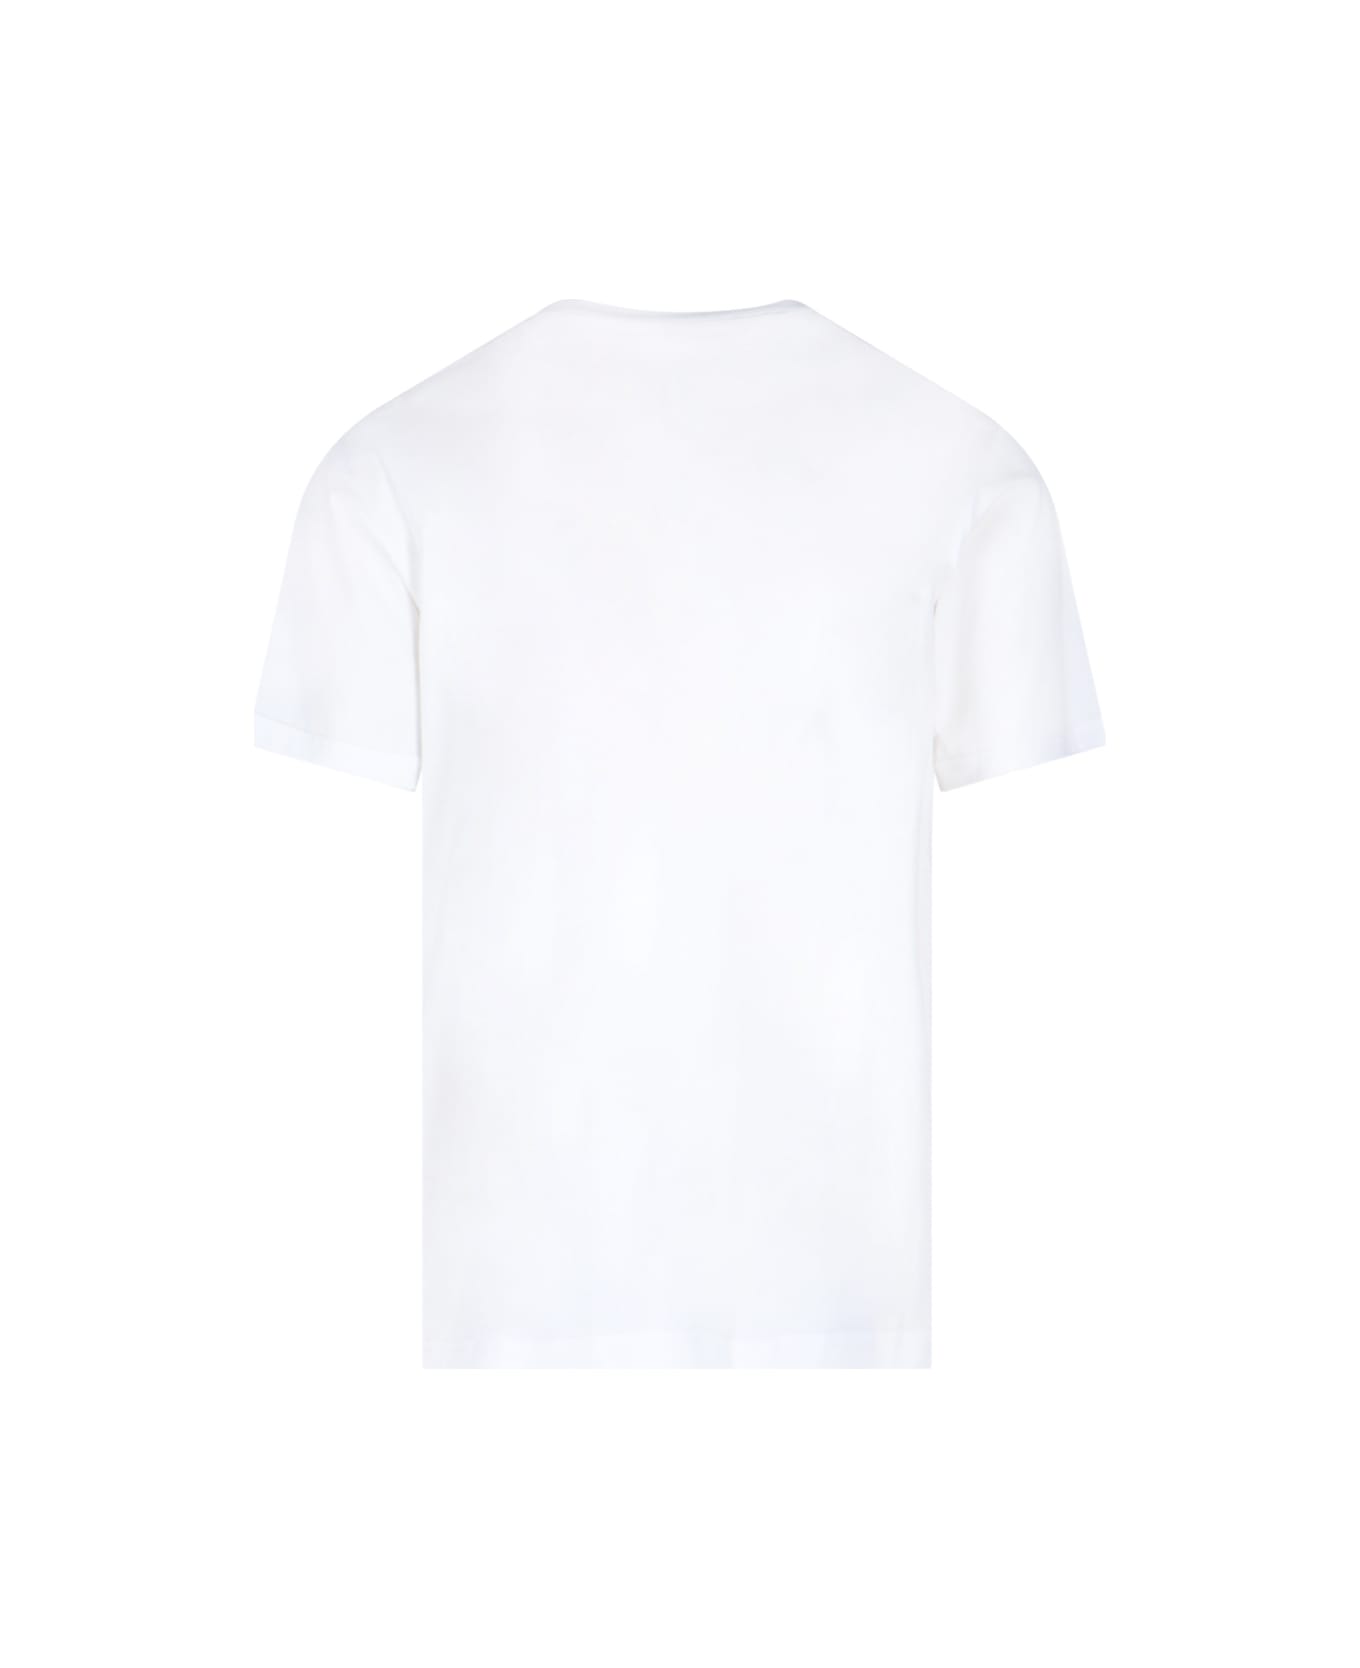 Craig Green Eyelet Detail T-shirt - White シャツ